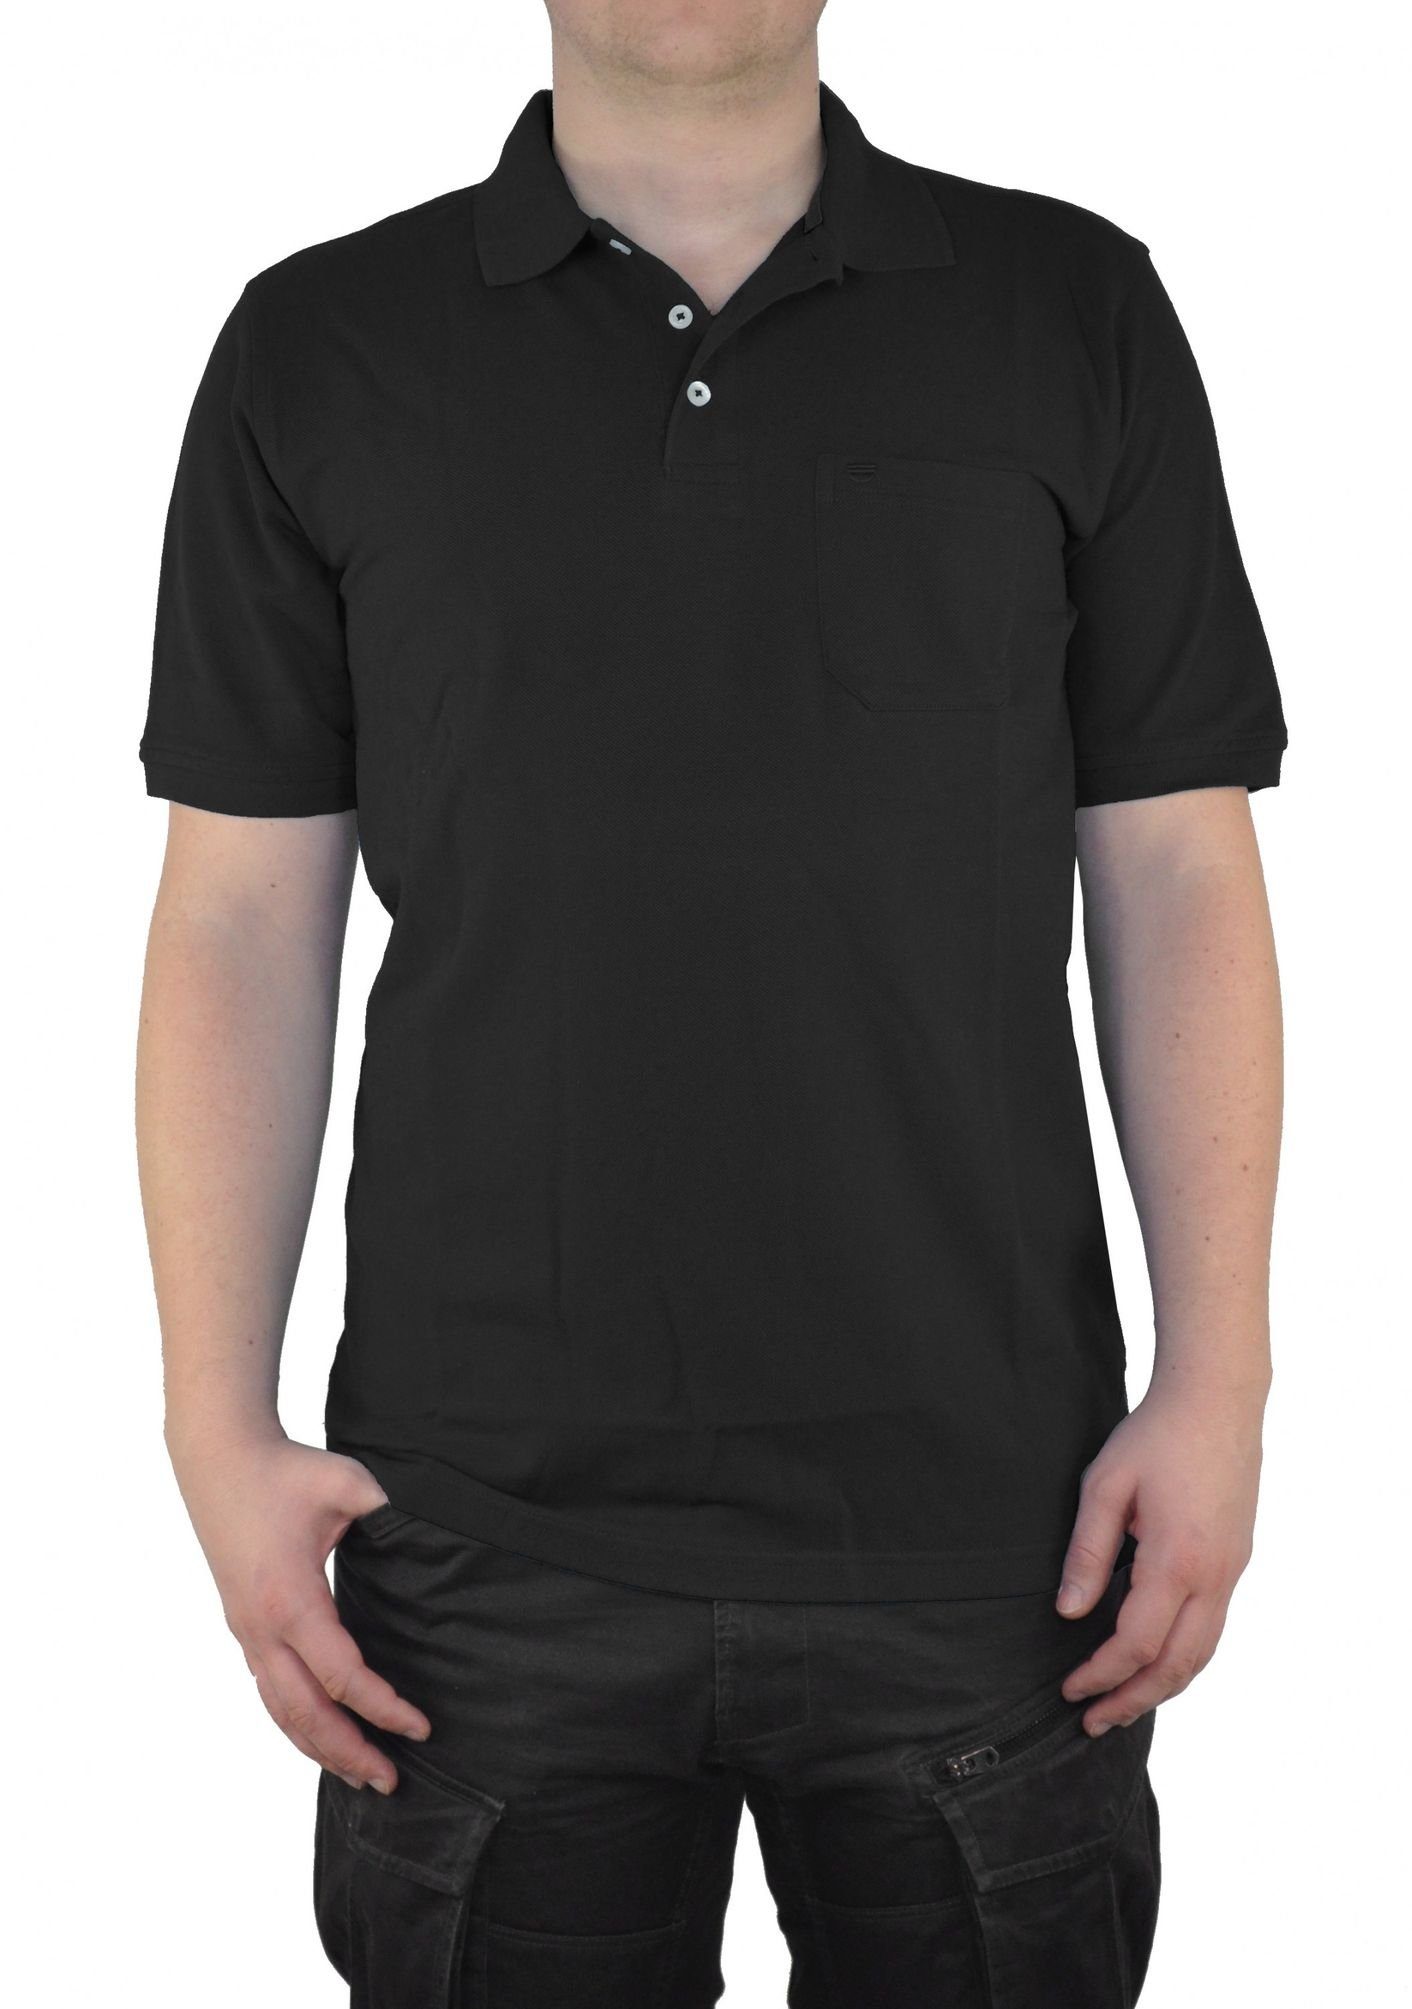 Redmond Poloshirt Piqué Polo-Shirt Schwarz(90)